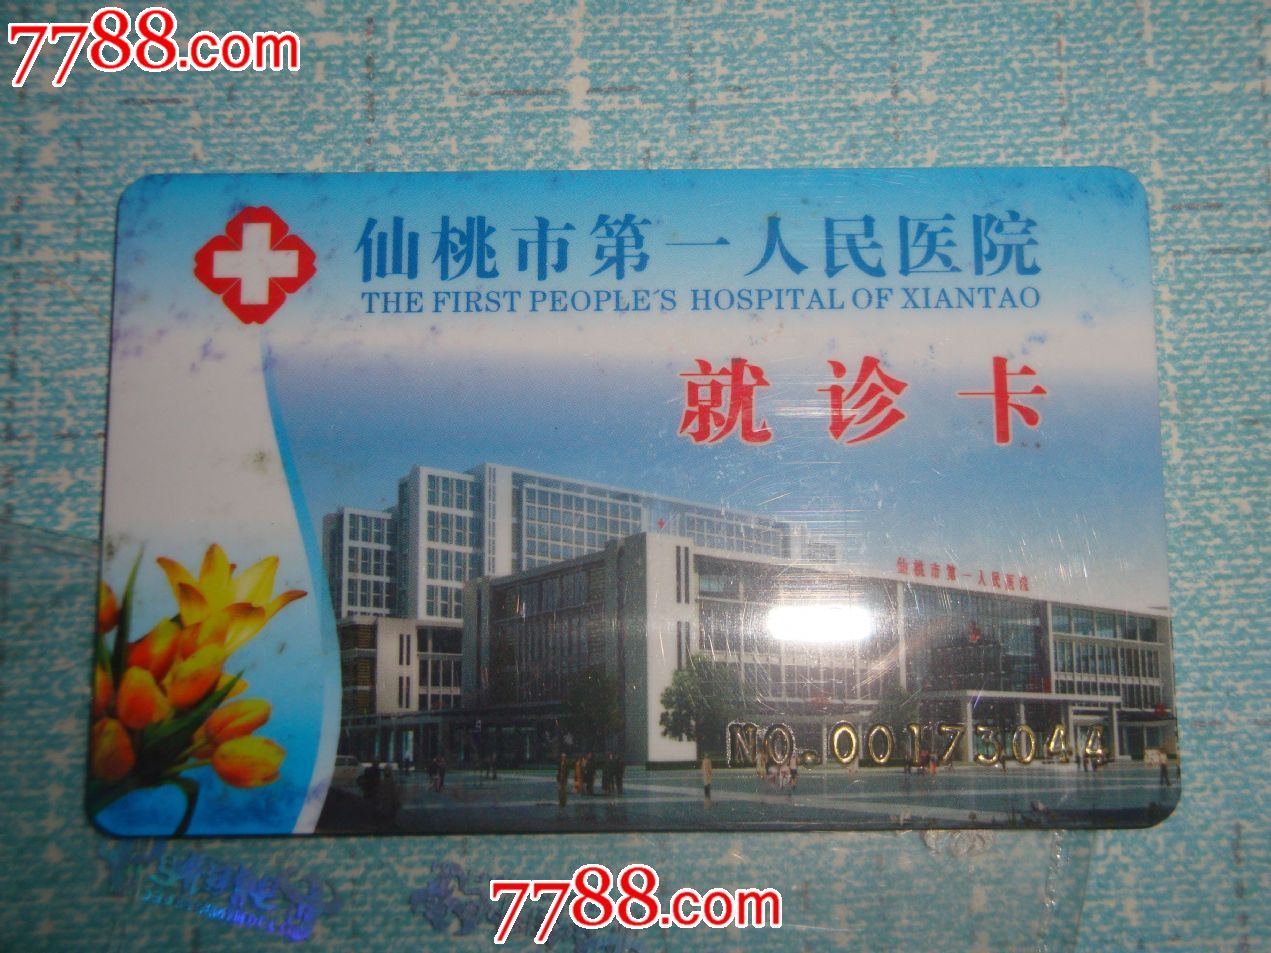 仙桃市第一医院就诊卡-价格:5元-se24748369-